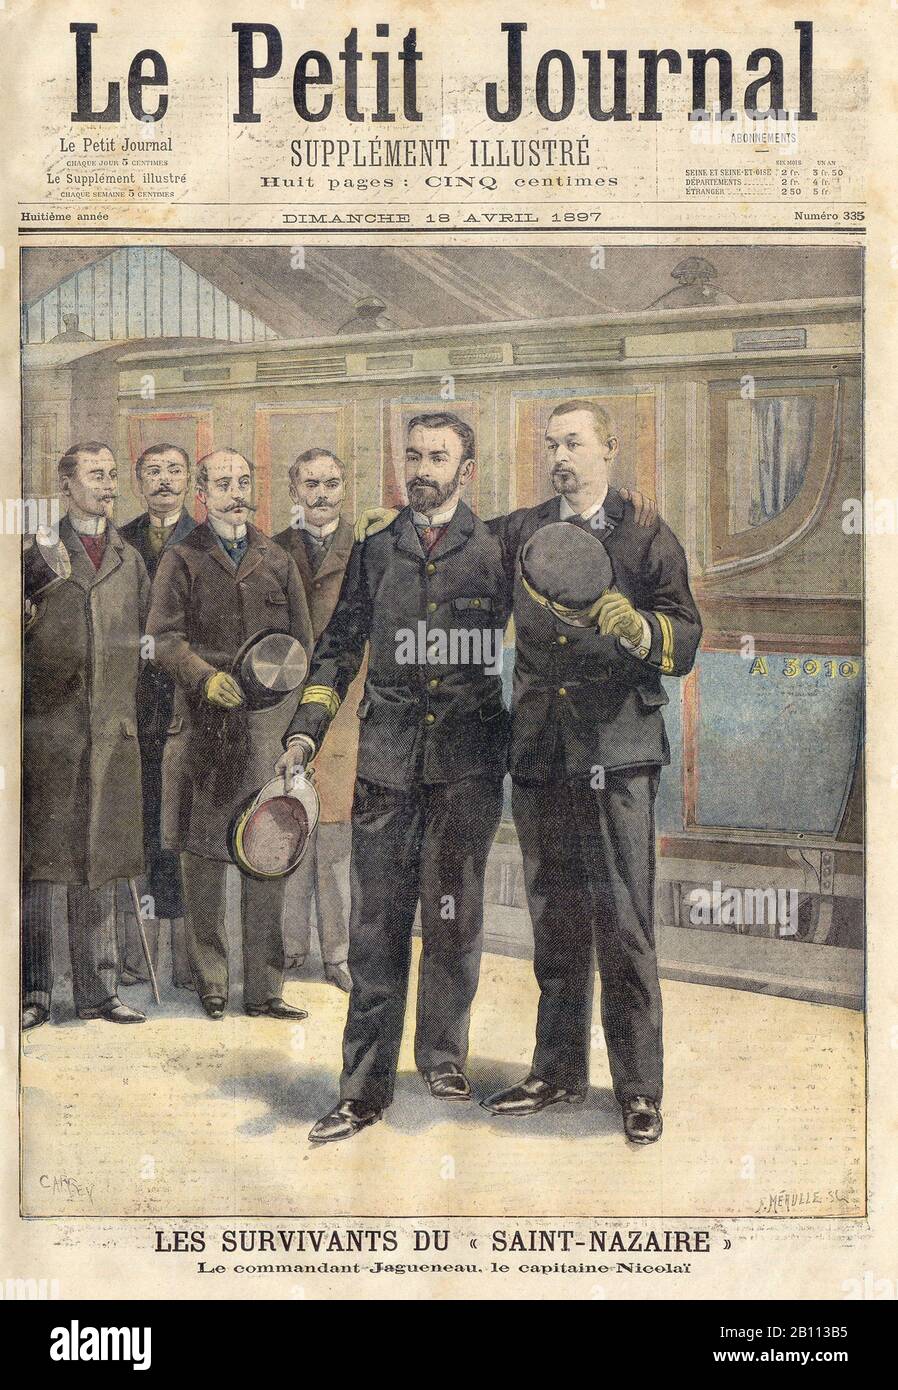 LES SURVIVANTS DU « SAINT-NAZAIRE  - THE SURVIVORS OF THE 'SAINT-NAZAIRE - In 'Le Petit Journal' French Illustrated newspaper - 1897 Stock Photo